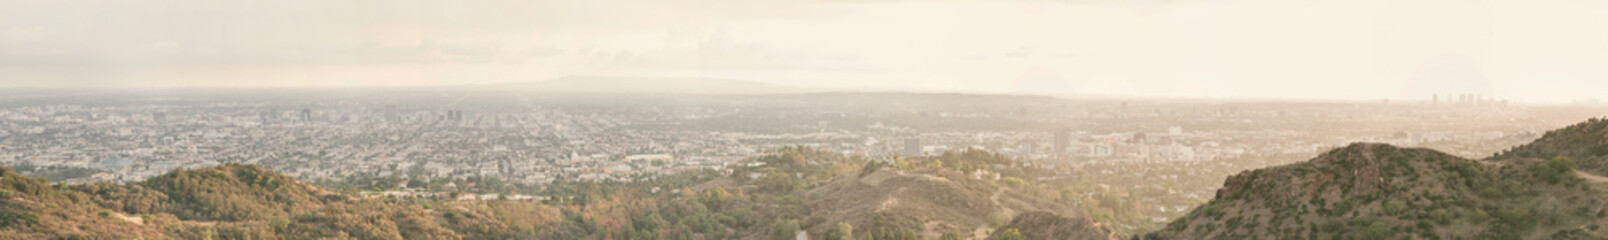 Vue panoramique sur la ville de Los Angeles